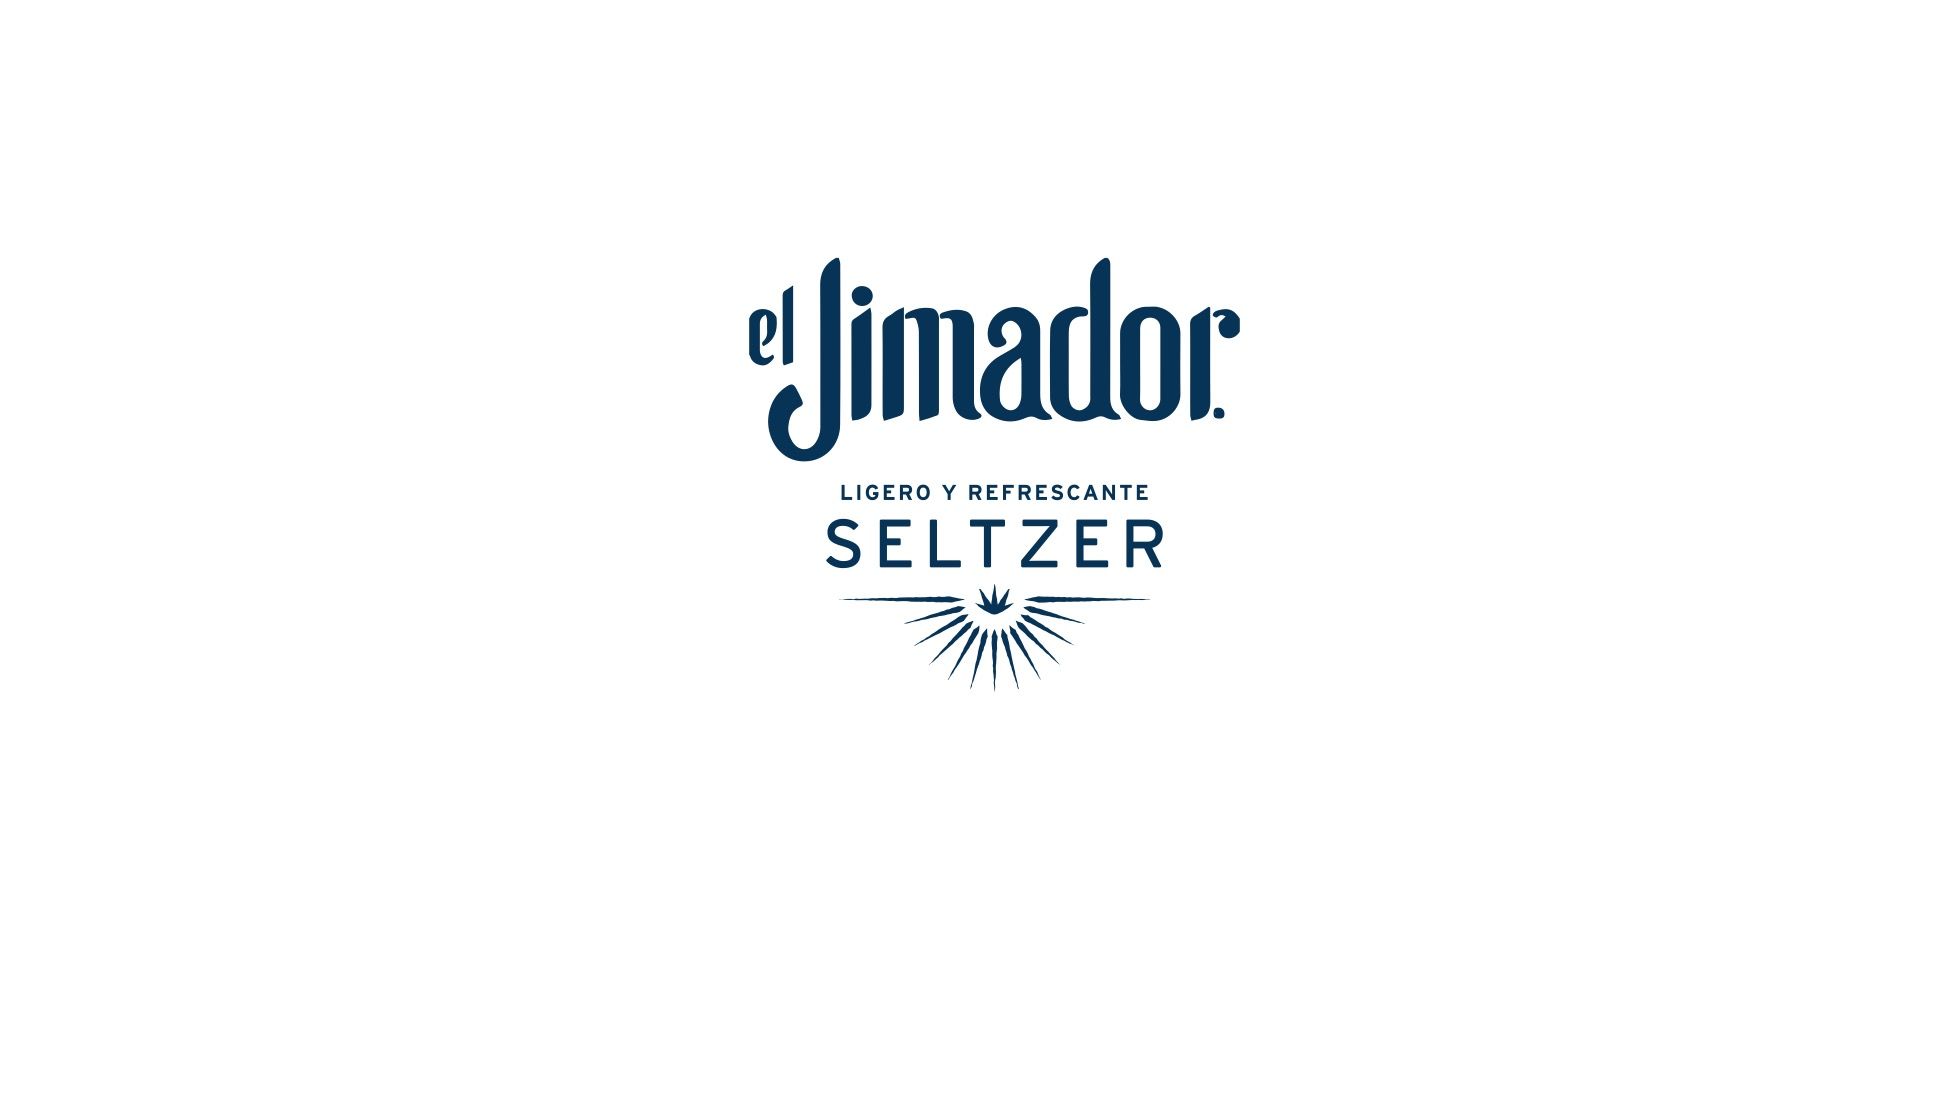 El Jimador Seltzer es galardonado con dos medallas en The Spirits Business